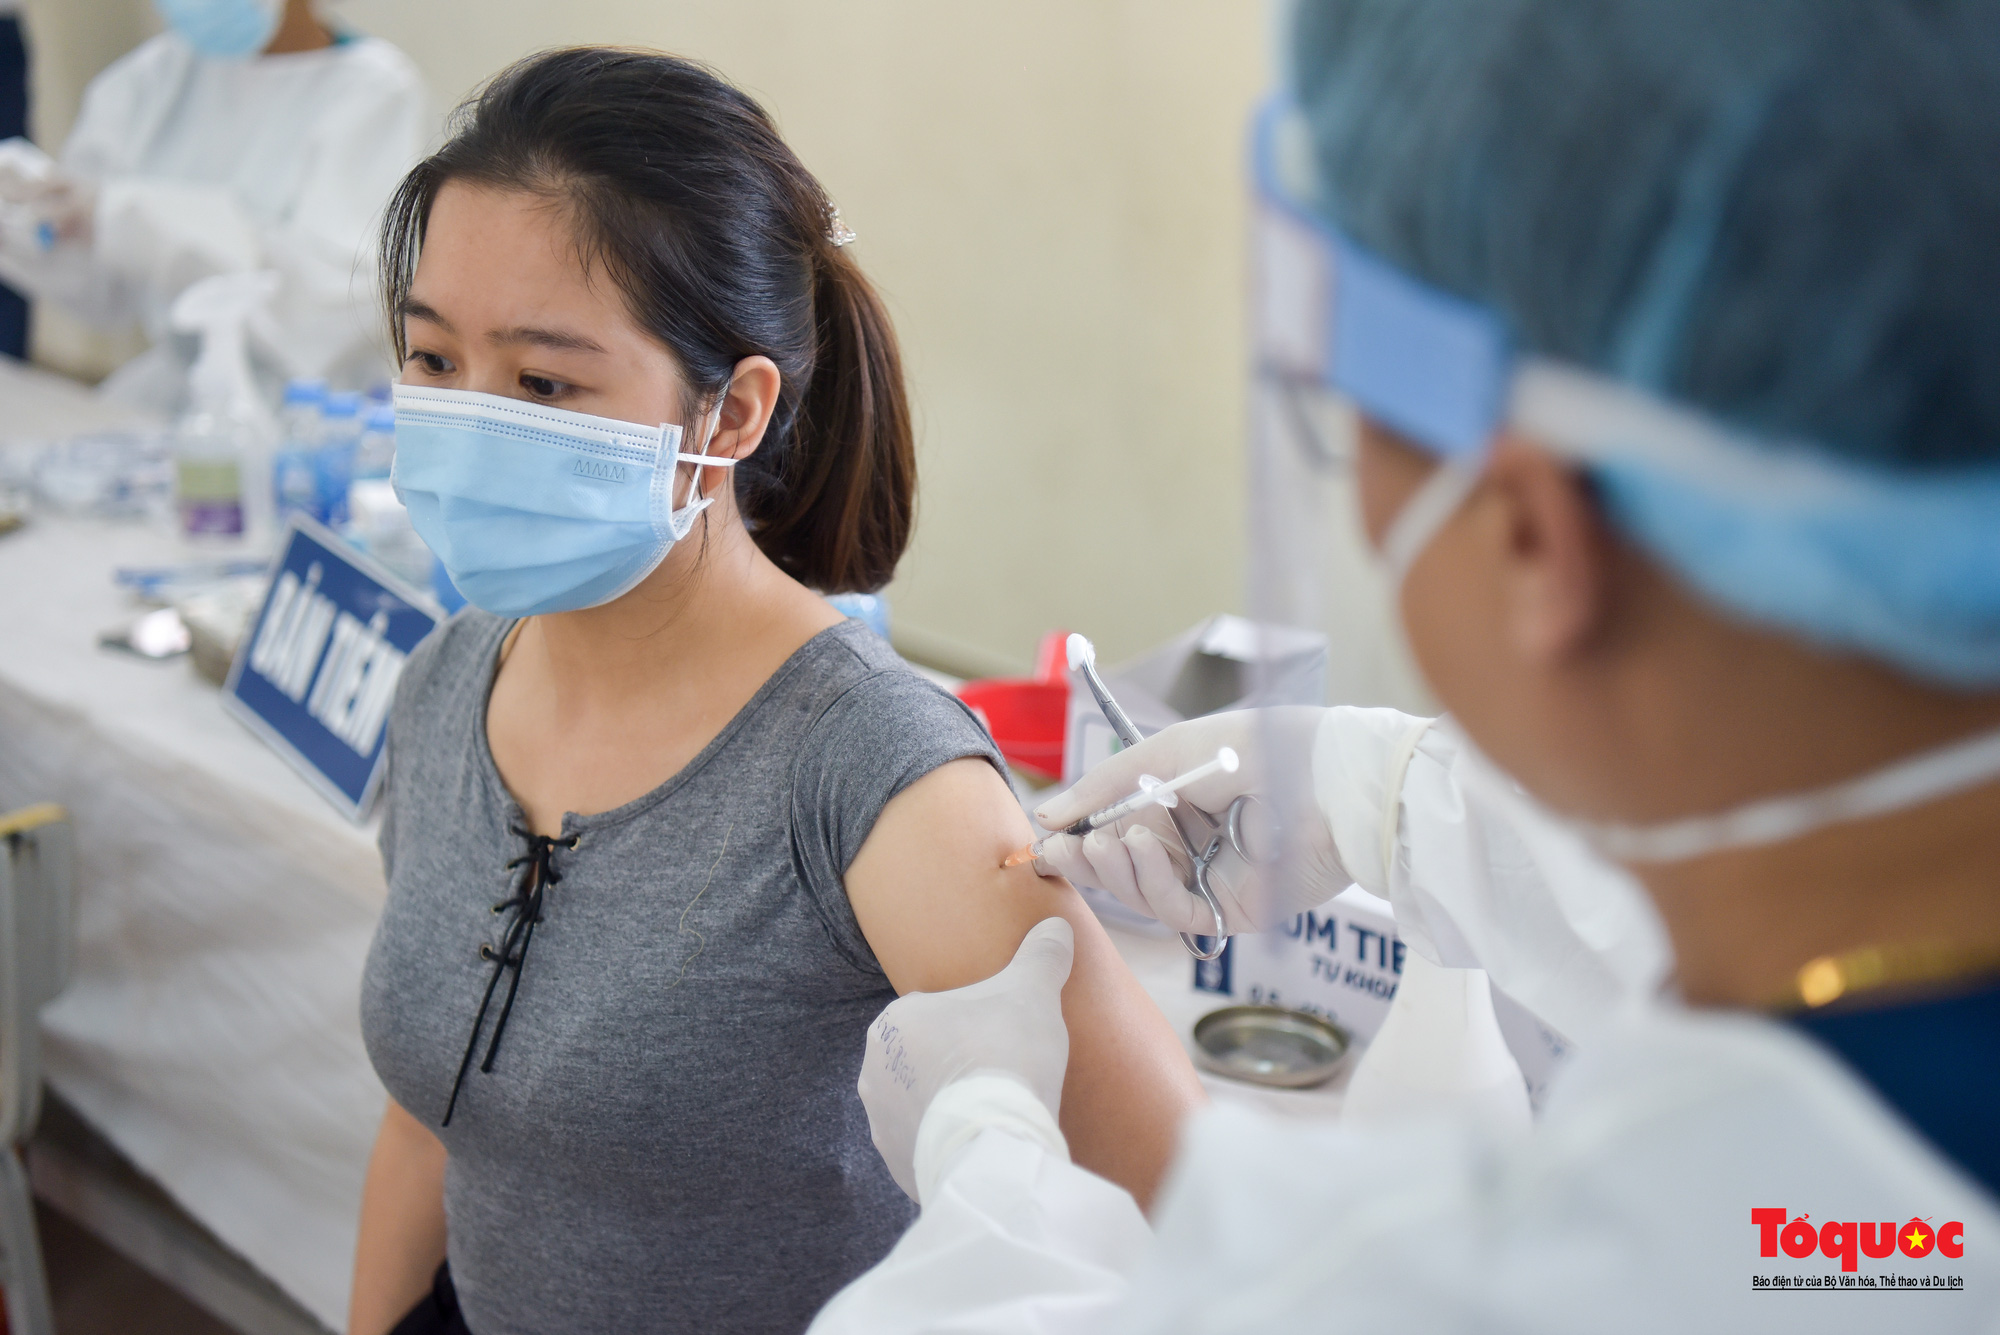 Đoàn y bác sĩ Bắc Giang hỗ trợ tiêm vaccine Vero Cell tại Hà Nội - Ảnh 9.